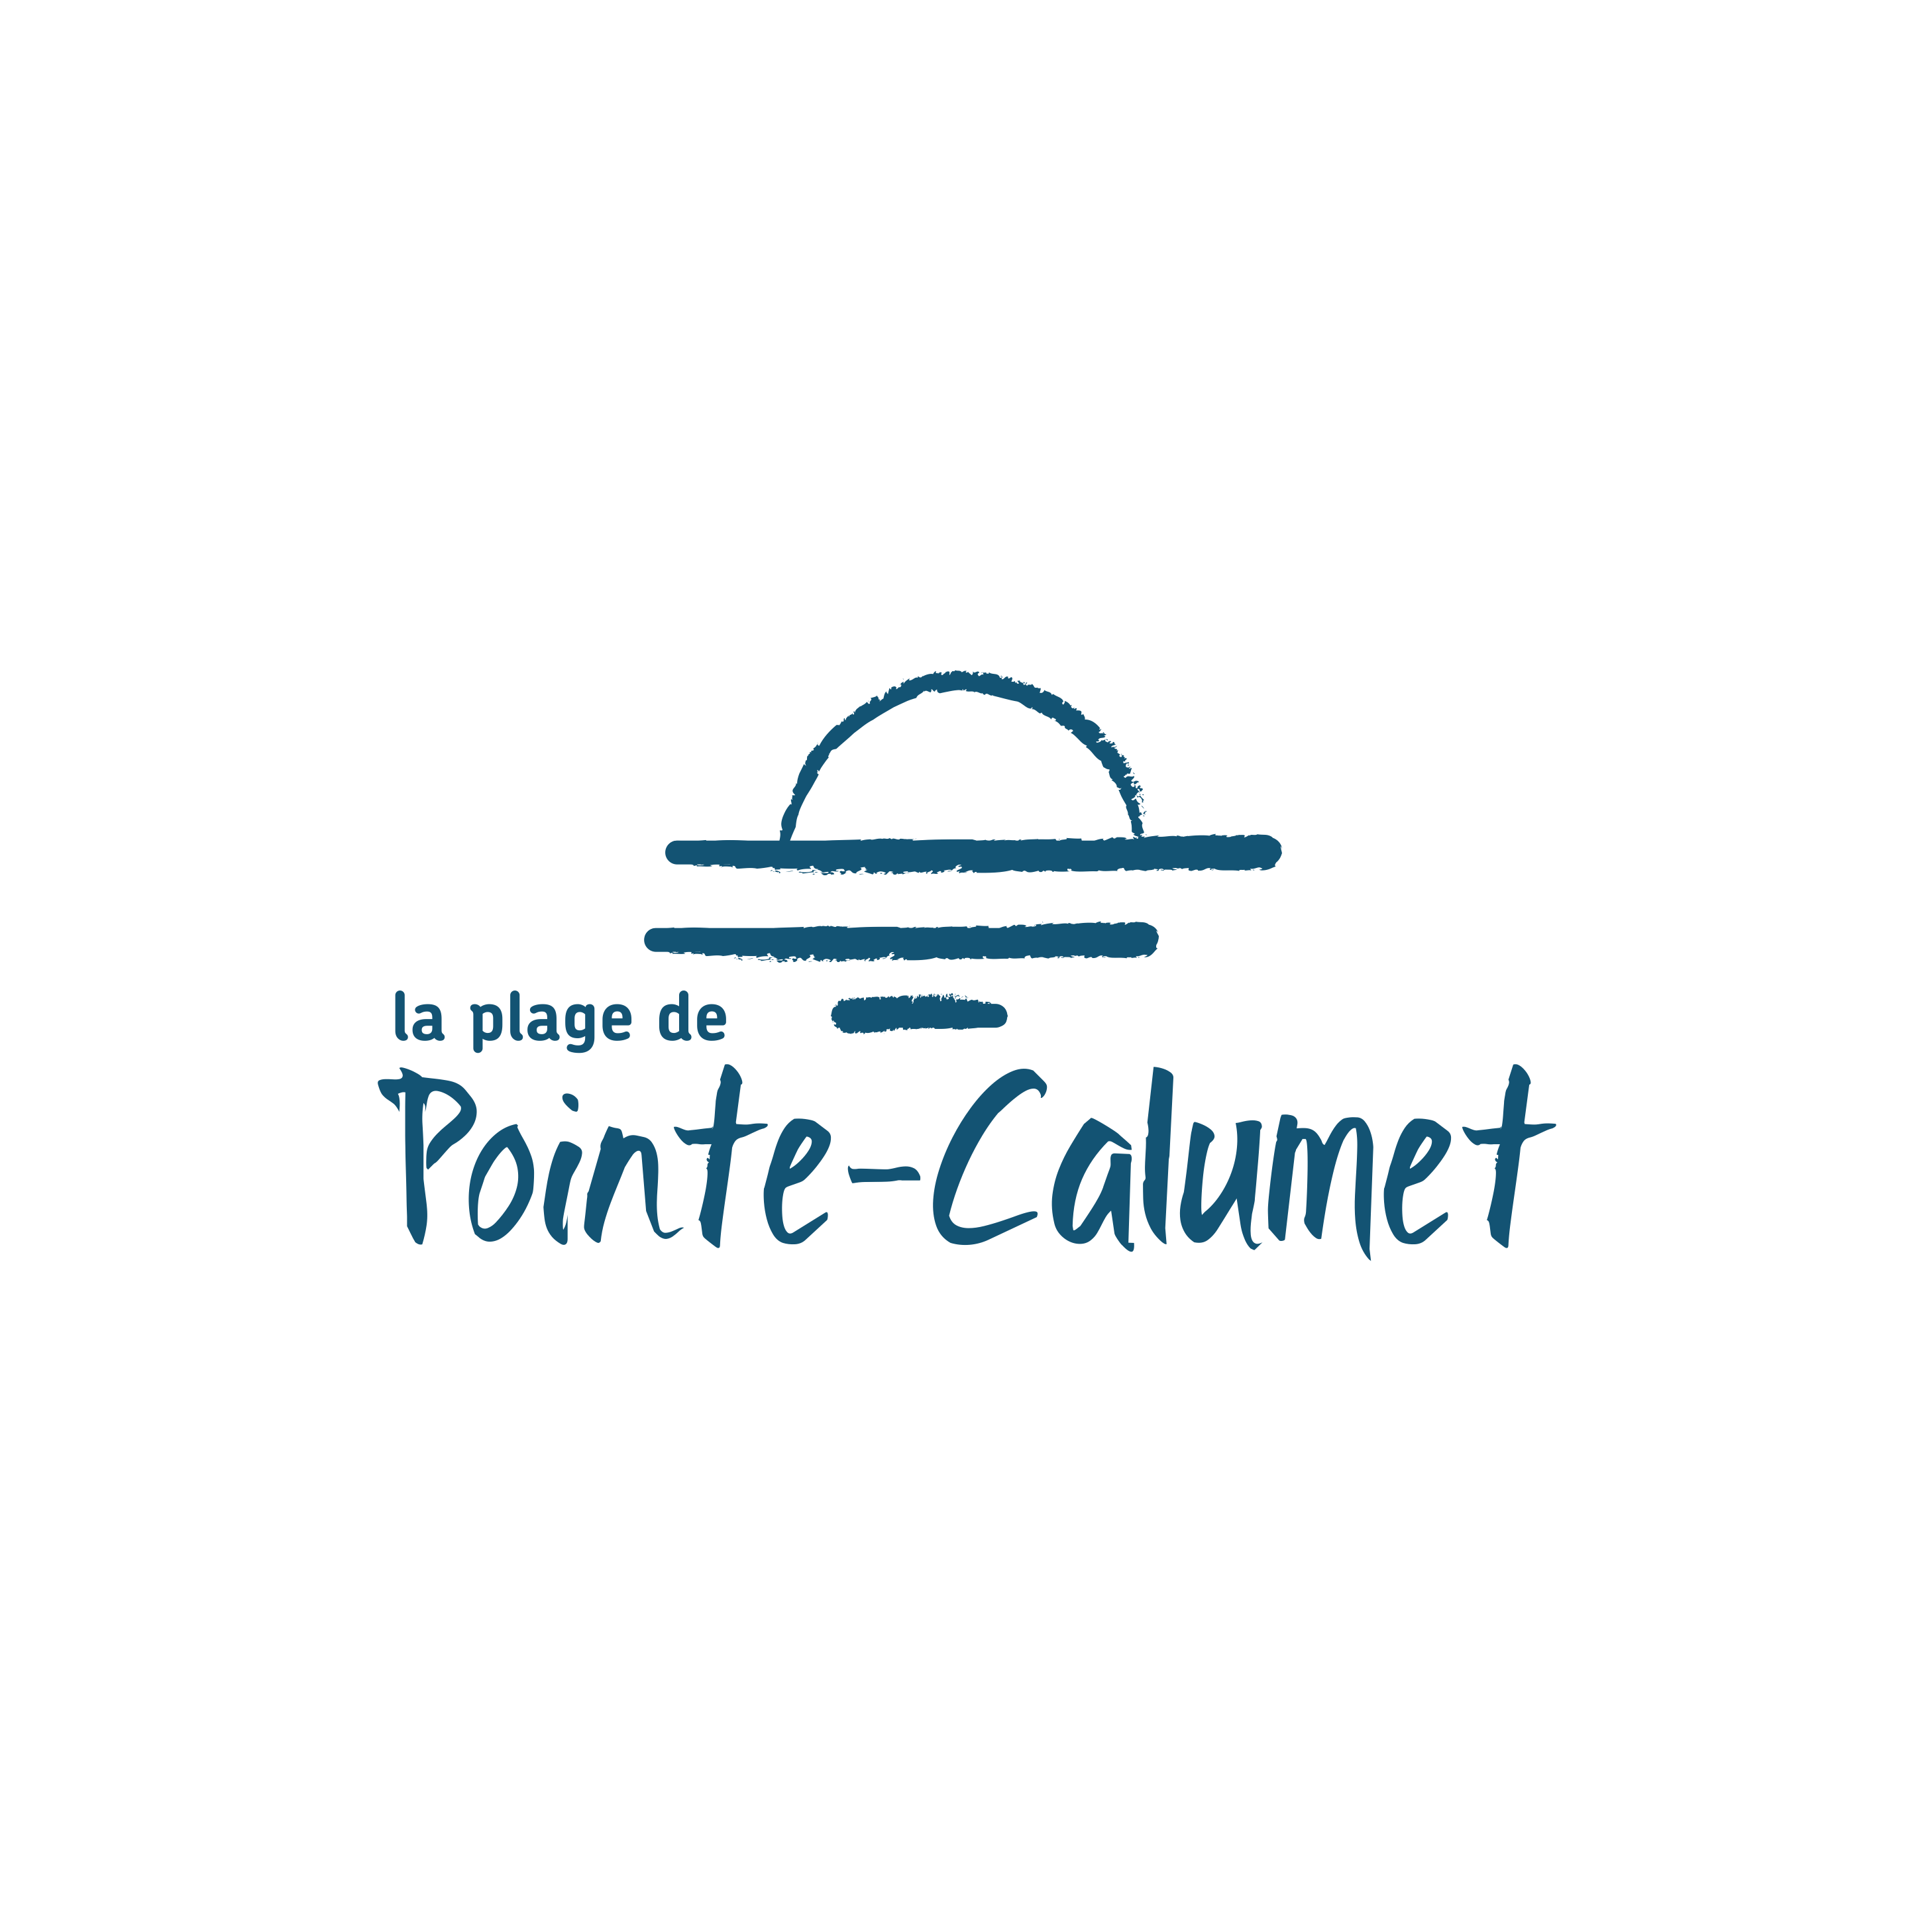 Calumet Logo - Plage de Pointe-Calumet